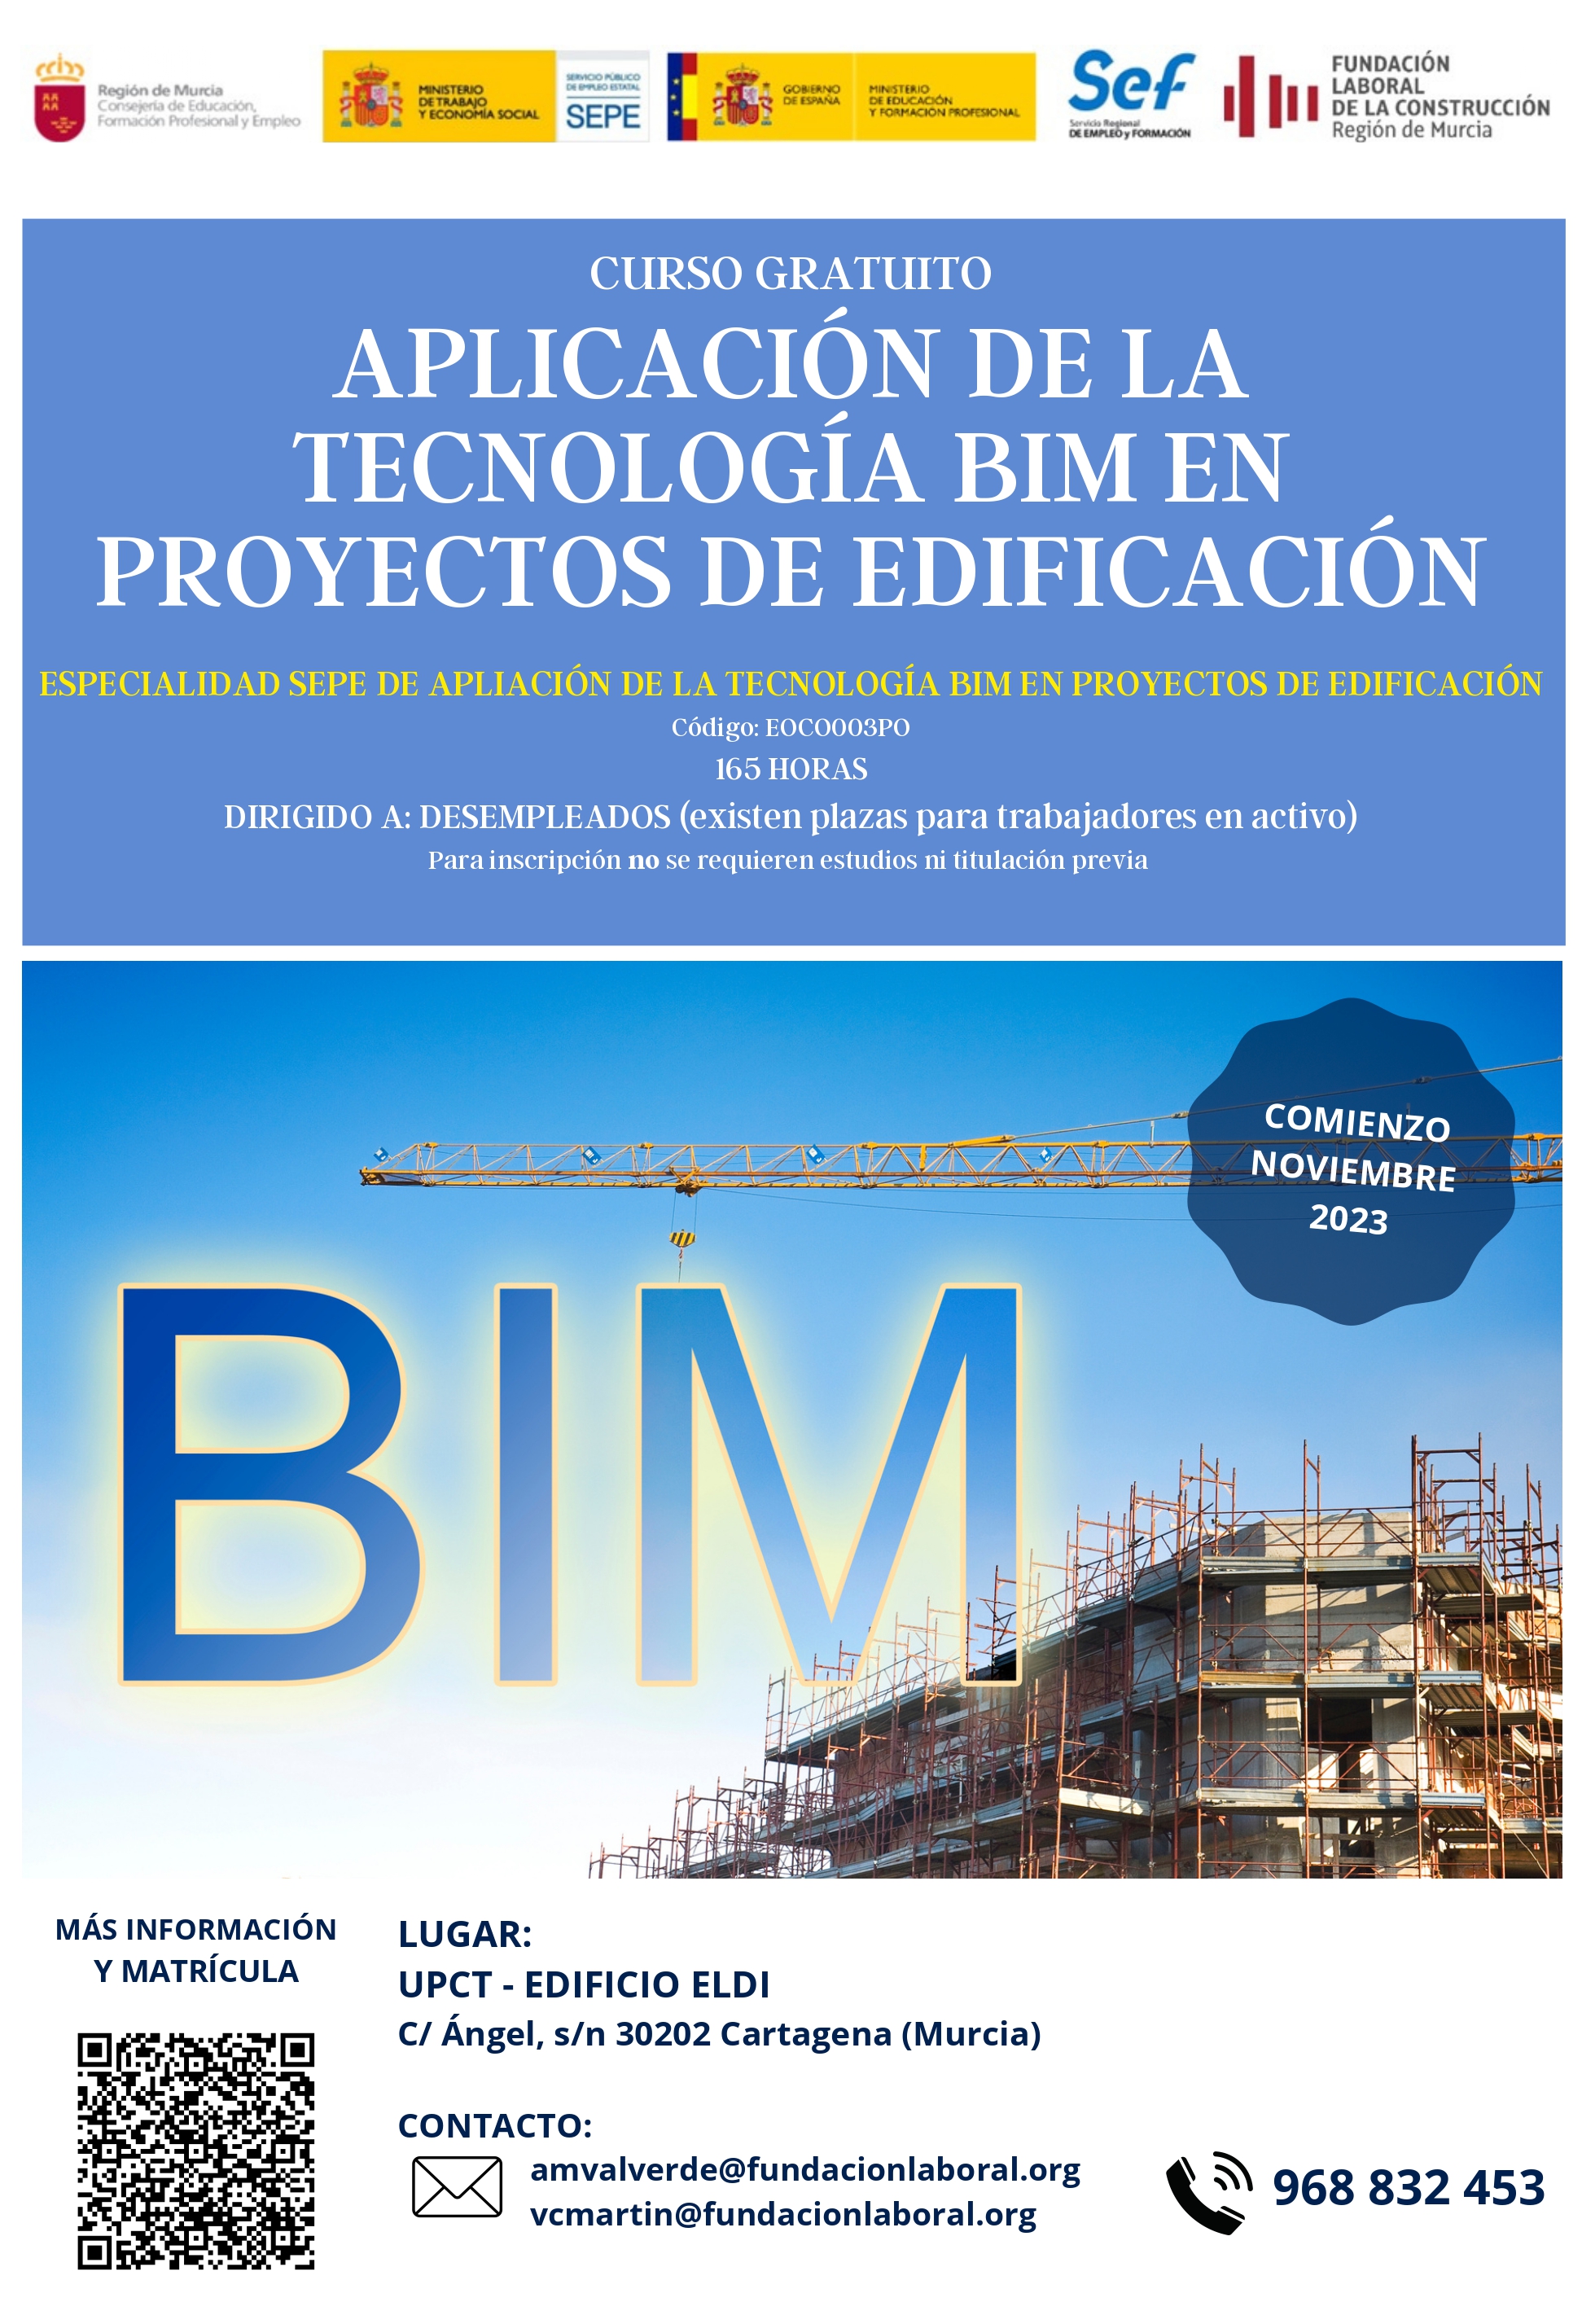 Imagen La Fundación Laboral de la Construcción lanza un nuevo curso sobre metodología BIM  100% subvencionado